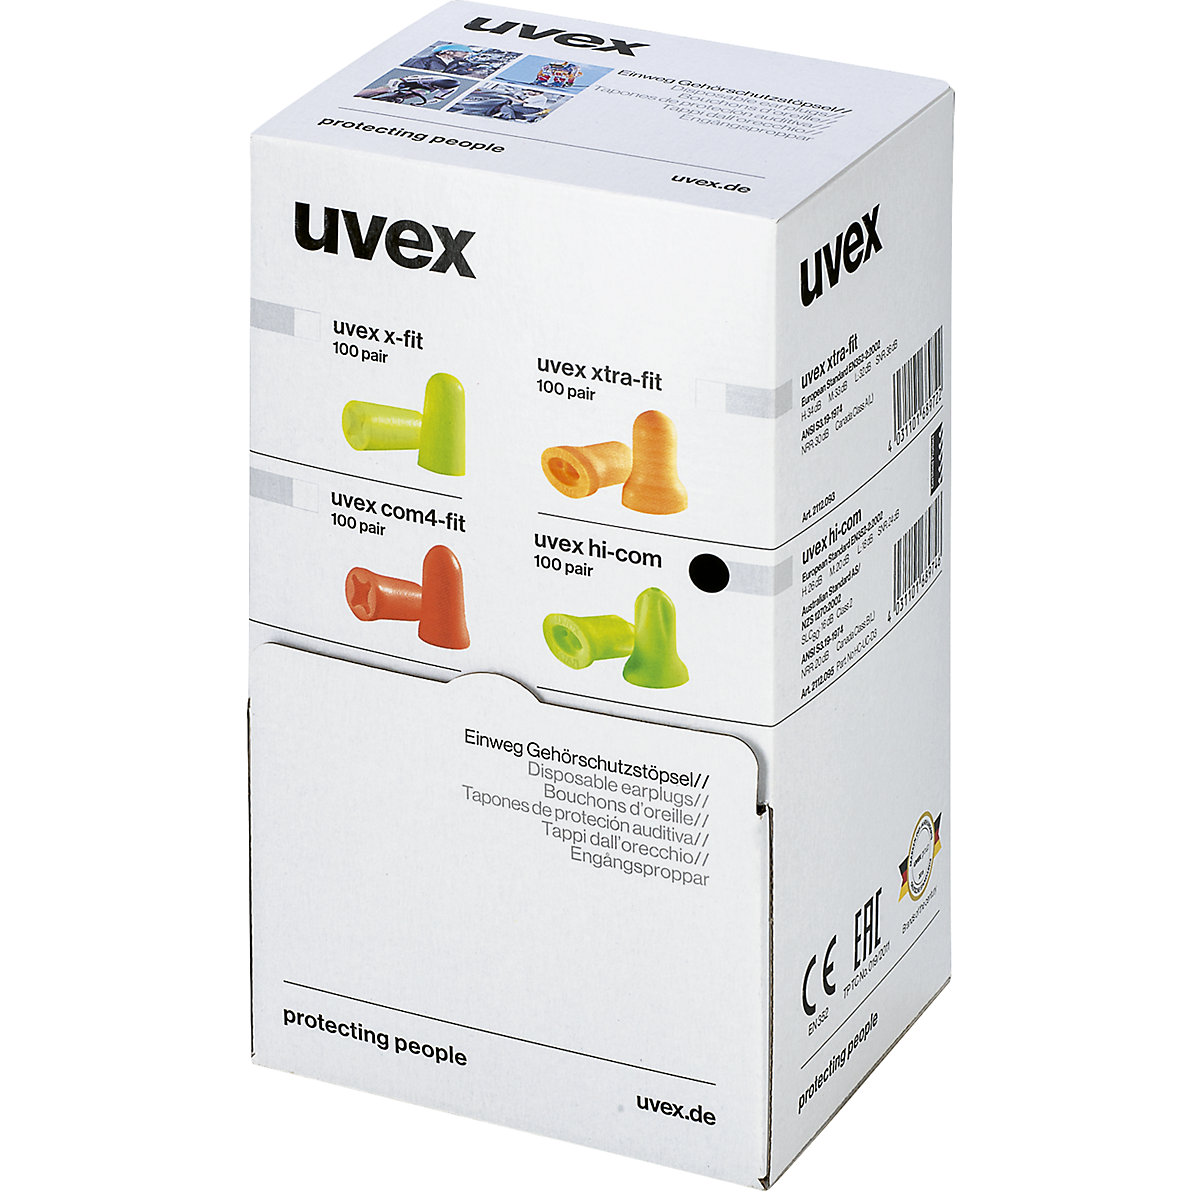 Wkładki przeciwhałasowe hi-com – Uvex